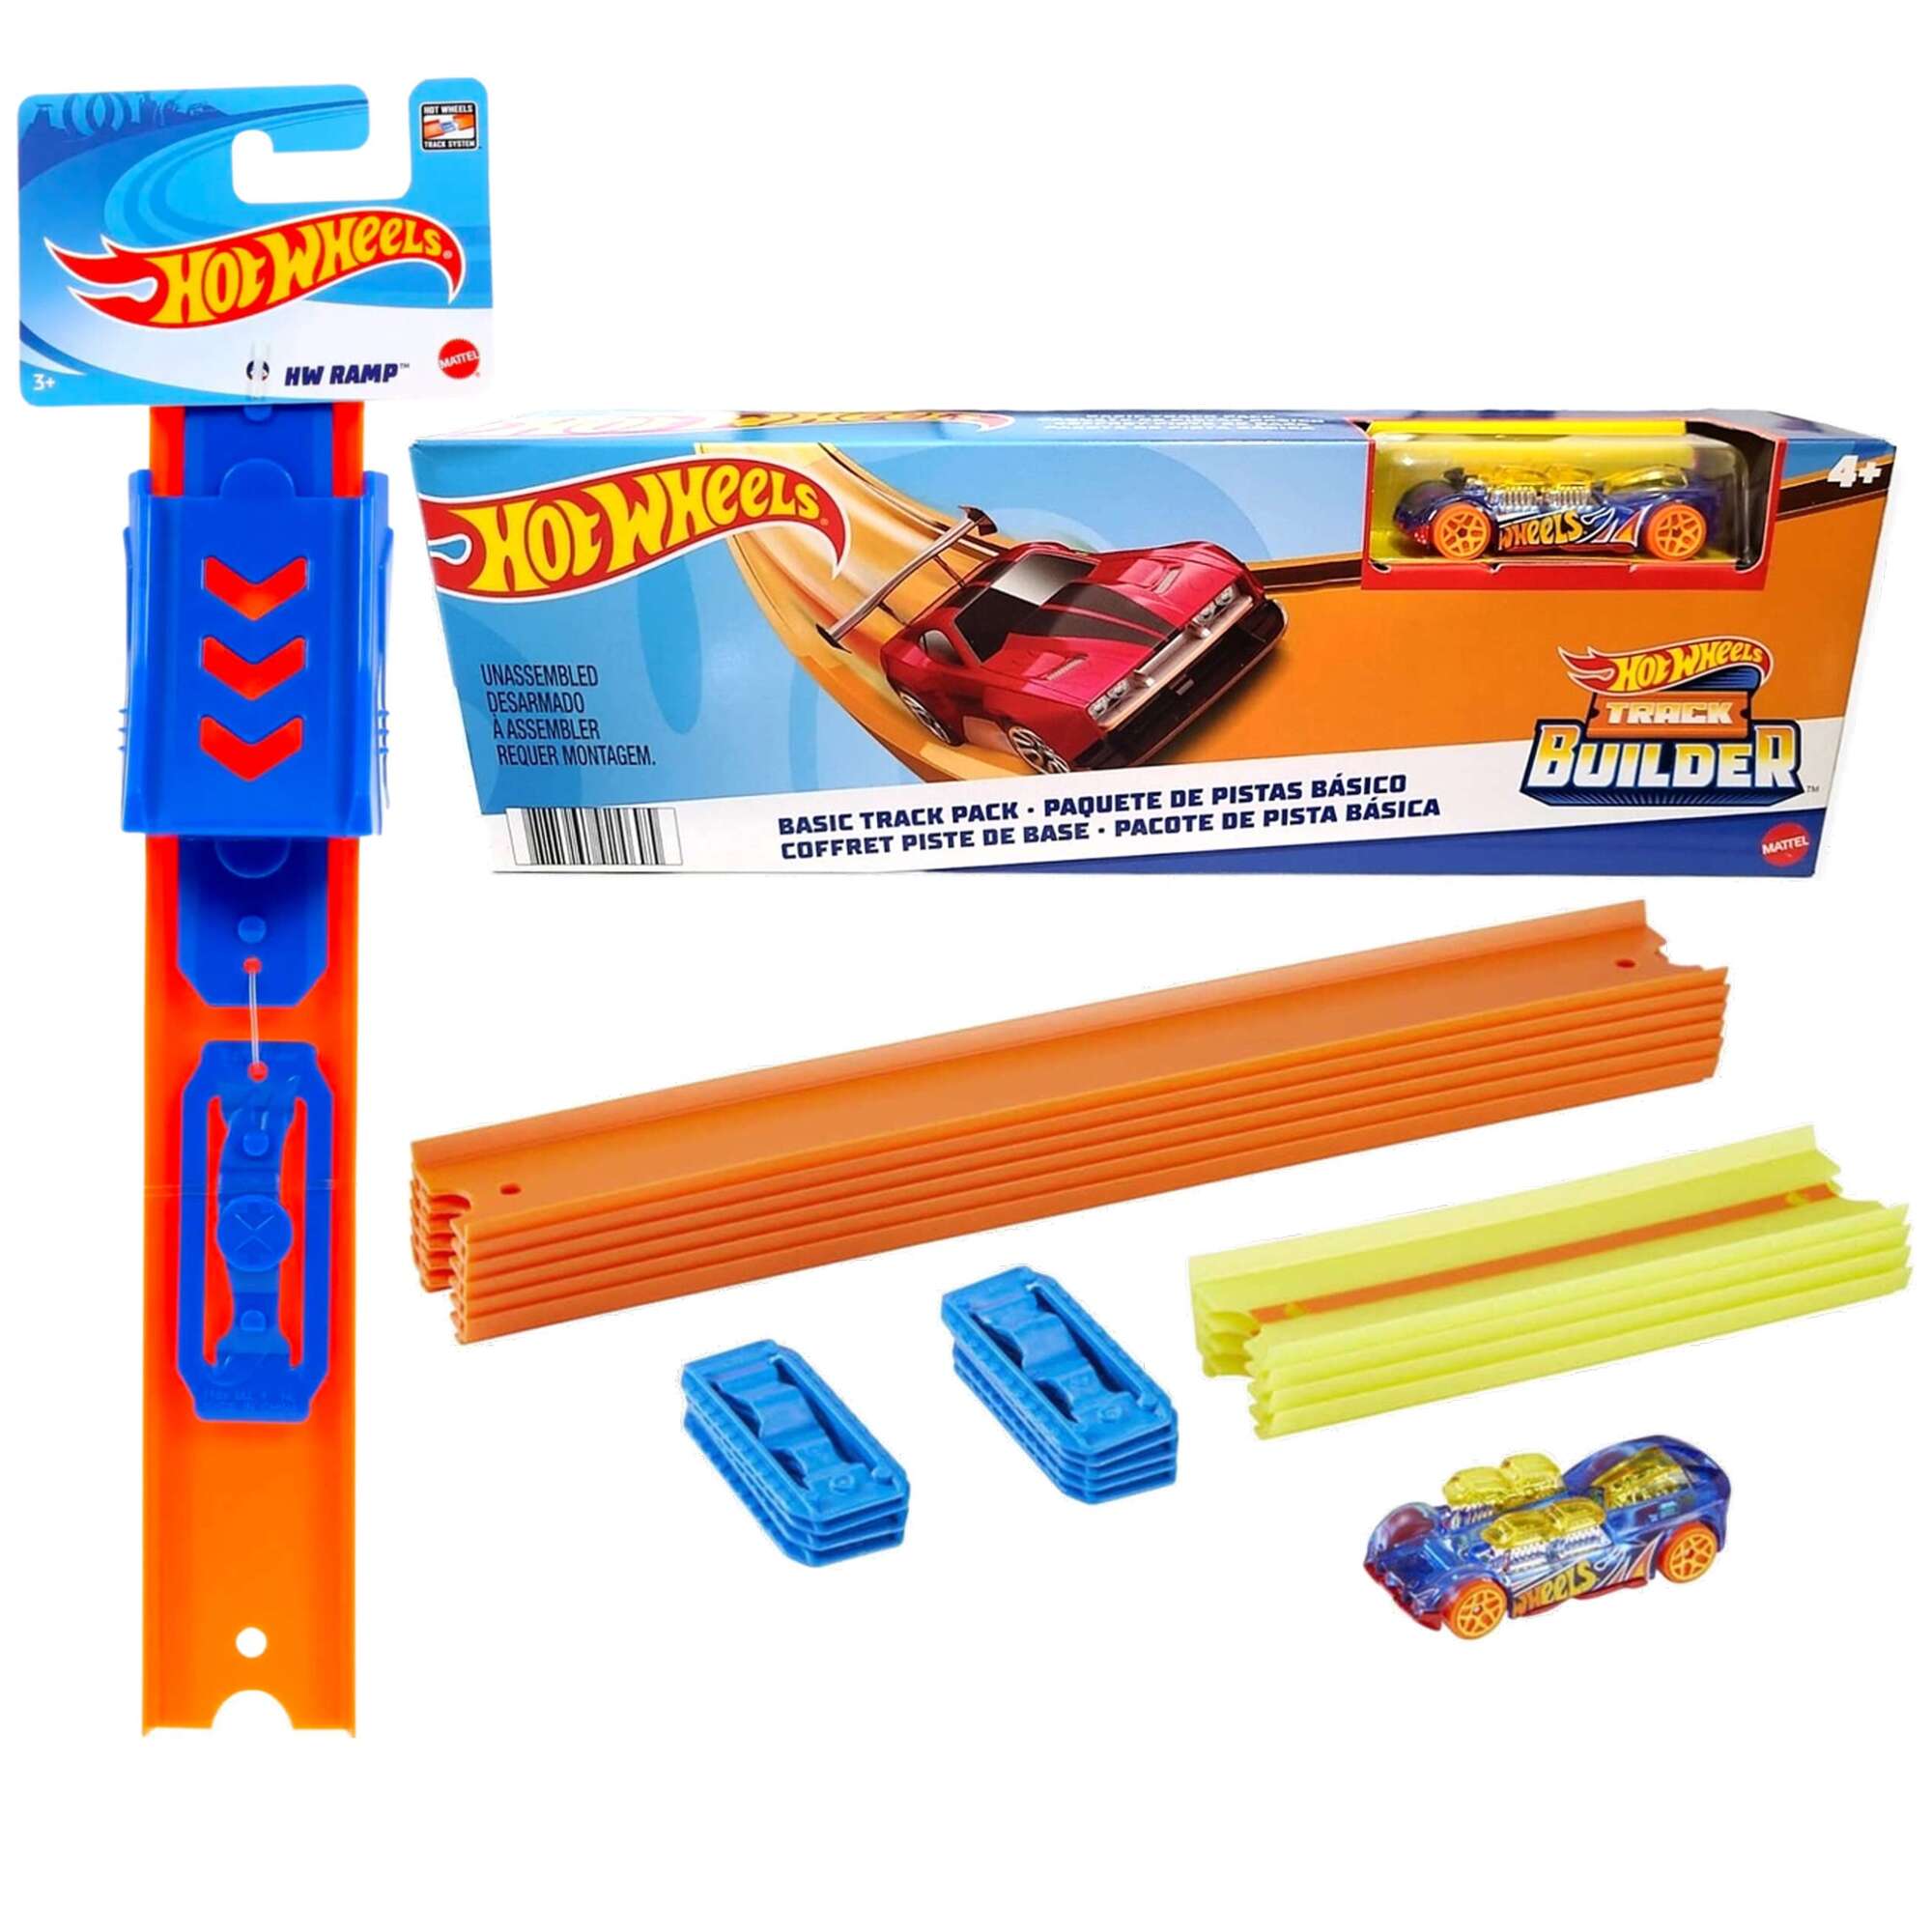 Mattel Hot Wheels Track Builder zestaw torw z pojazdem + zestaw uzupeniajcy Ramp Tory samochodowe